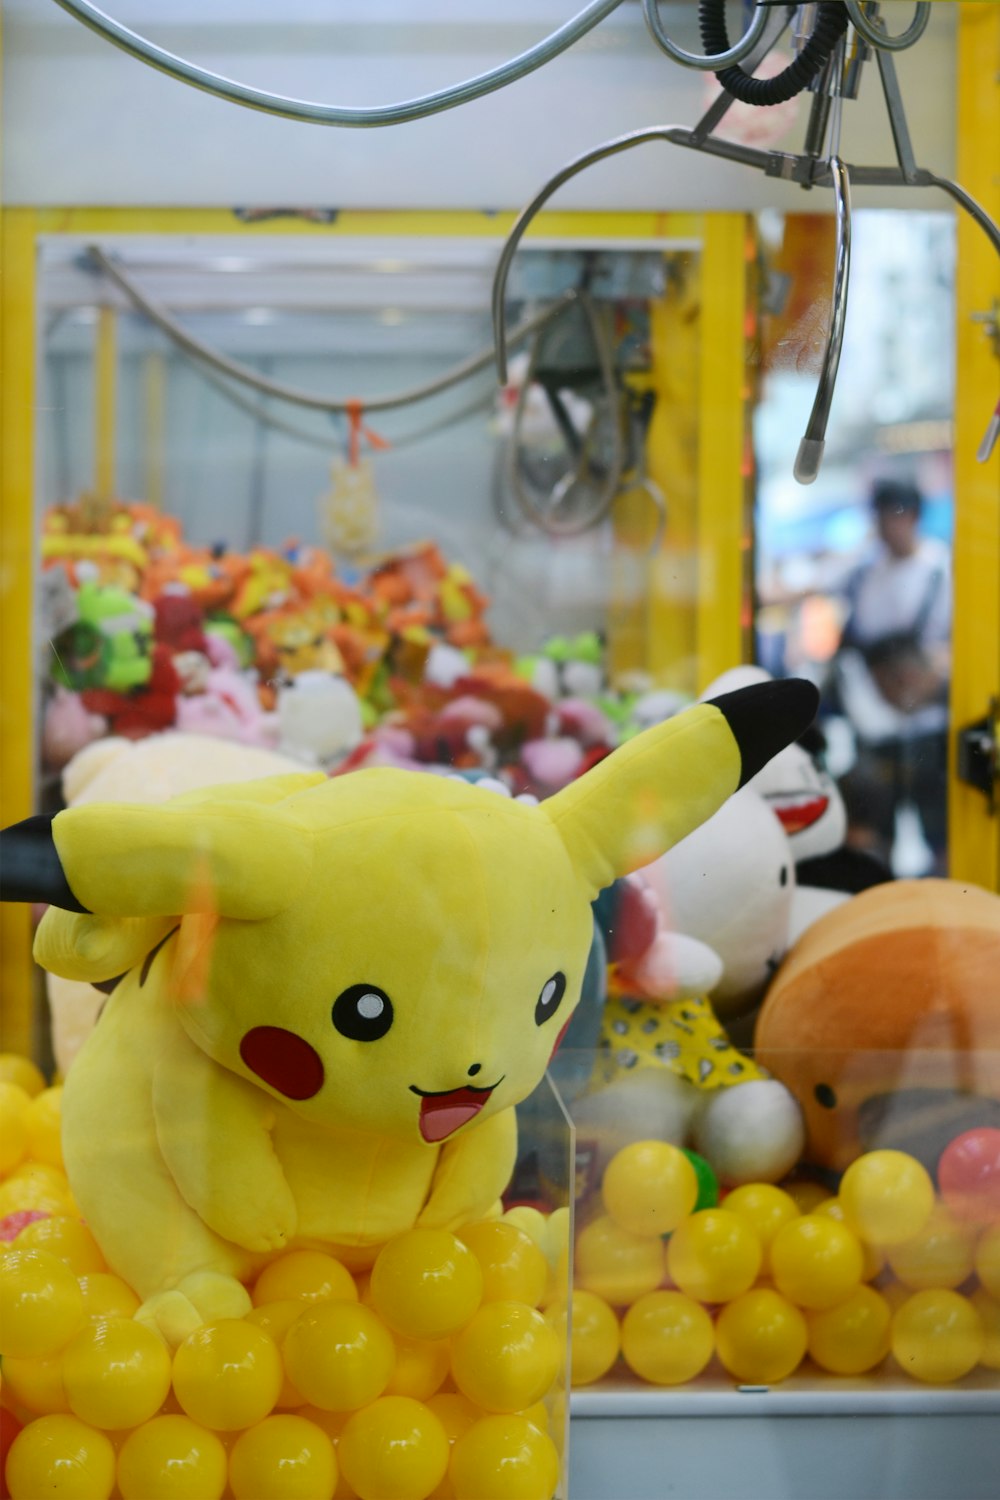 Pokemon Pikachu plush toy in claw machine